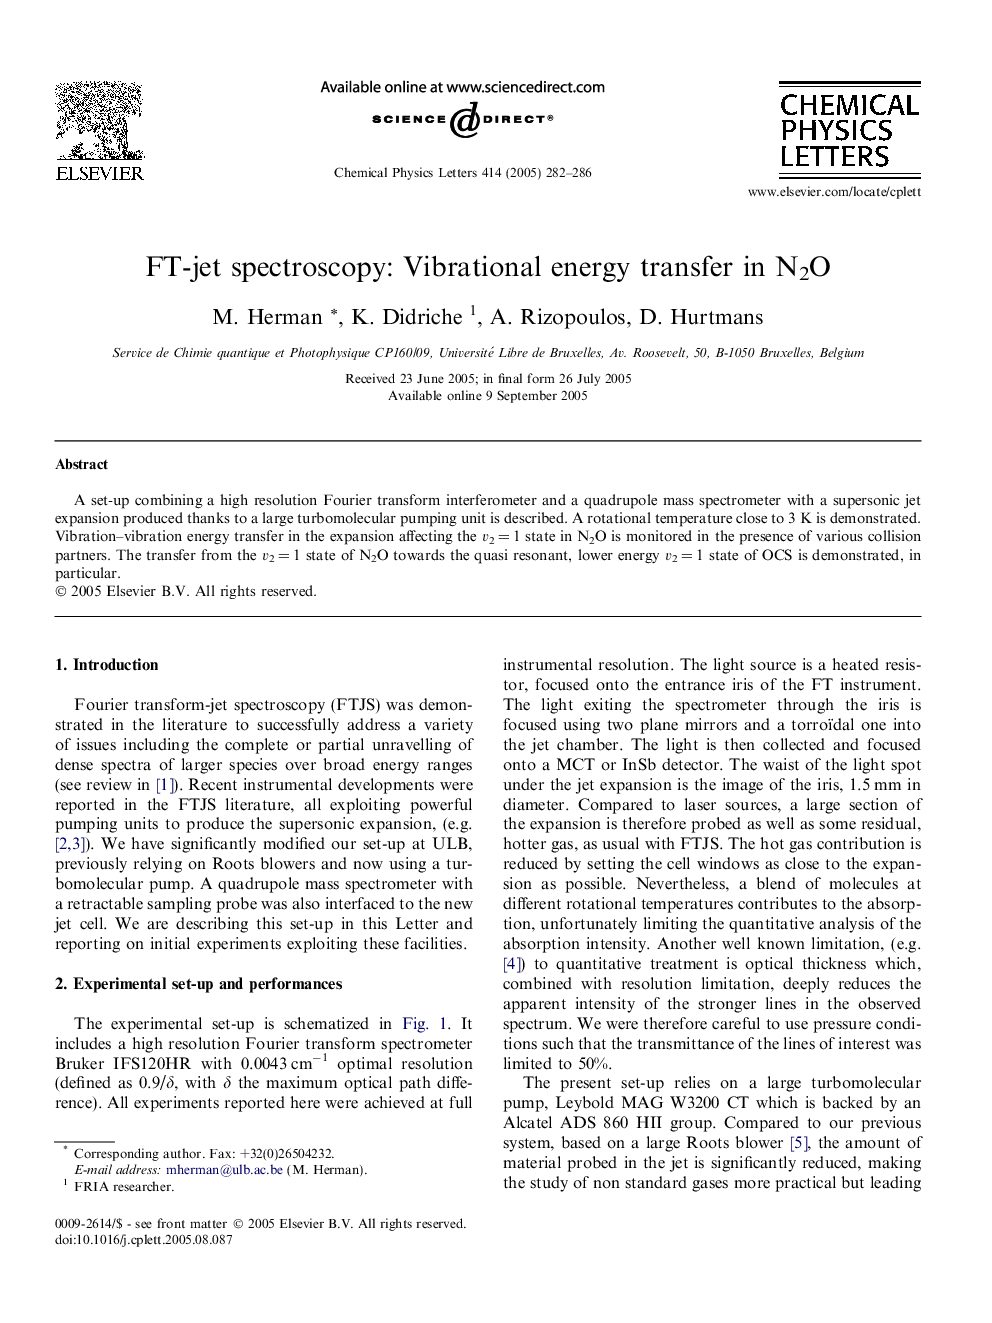 FT-jet spectroscopy: Vibrational energy transfer in N2O